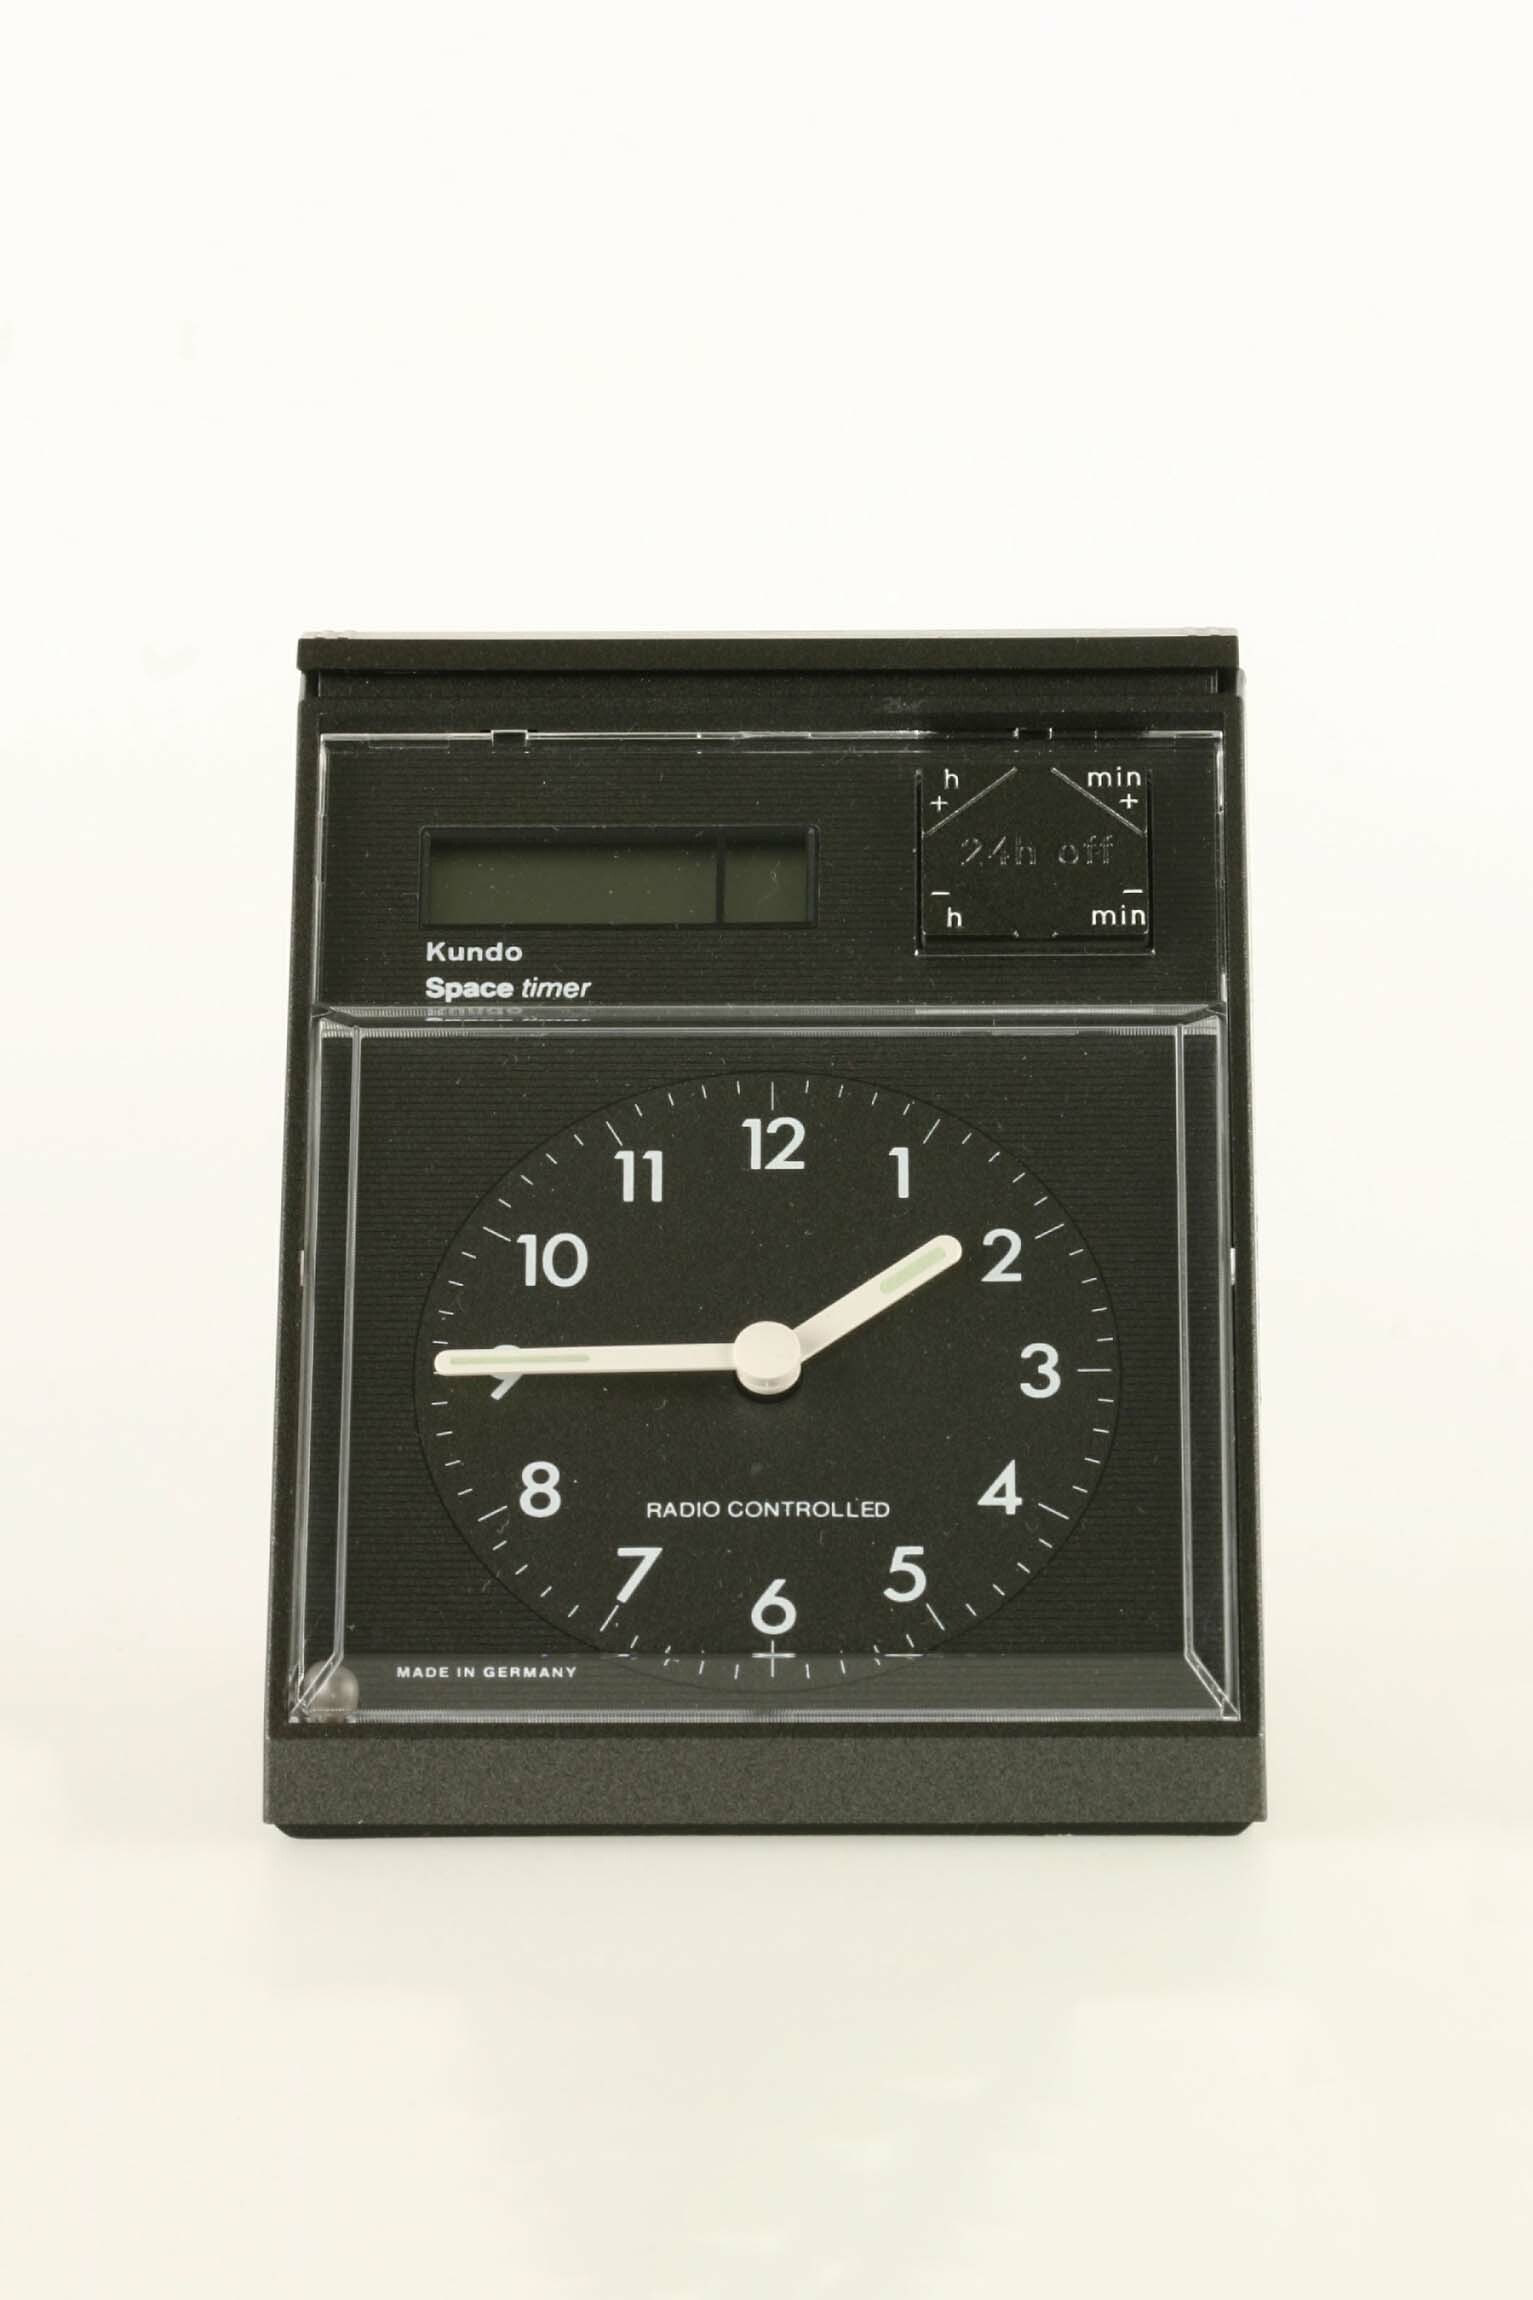 Wecker, Kundo, St. Georgen, 1991 (Deutsches Uhrenmuseum CC BY-SA)